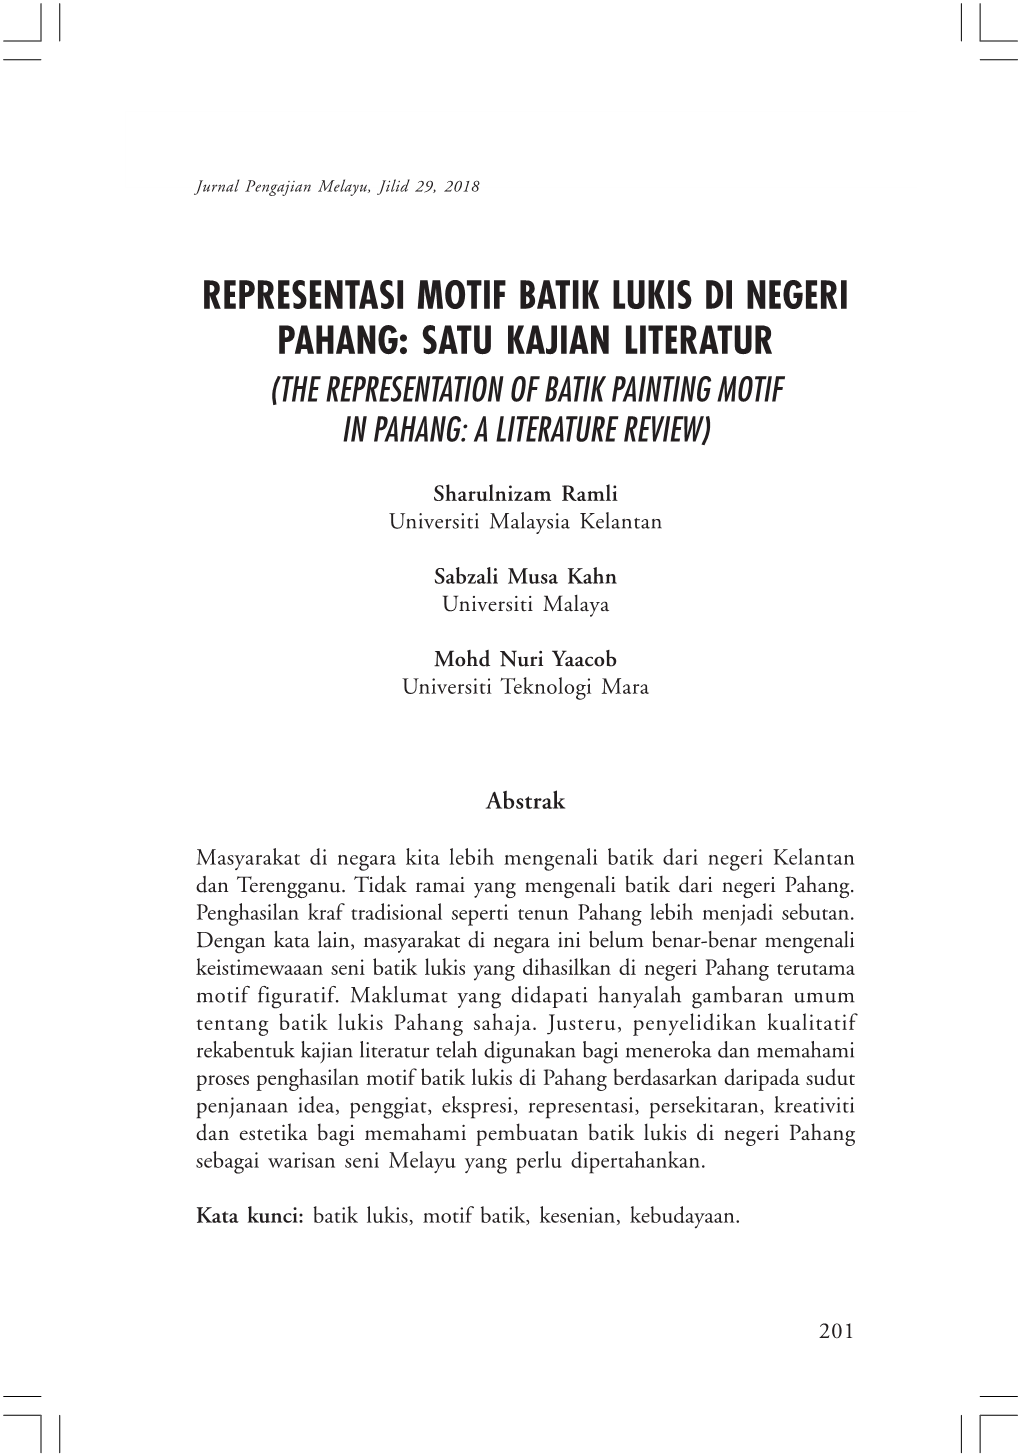 Representasi Motif Batik Lukis Di Negeri Pahang: Satu Kajian Literatur (The Representation of Batik Painting Motif in Pahang: a Literature Review)